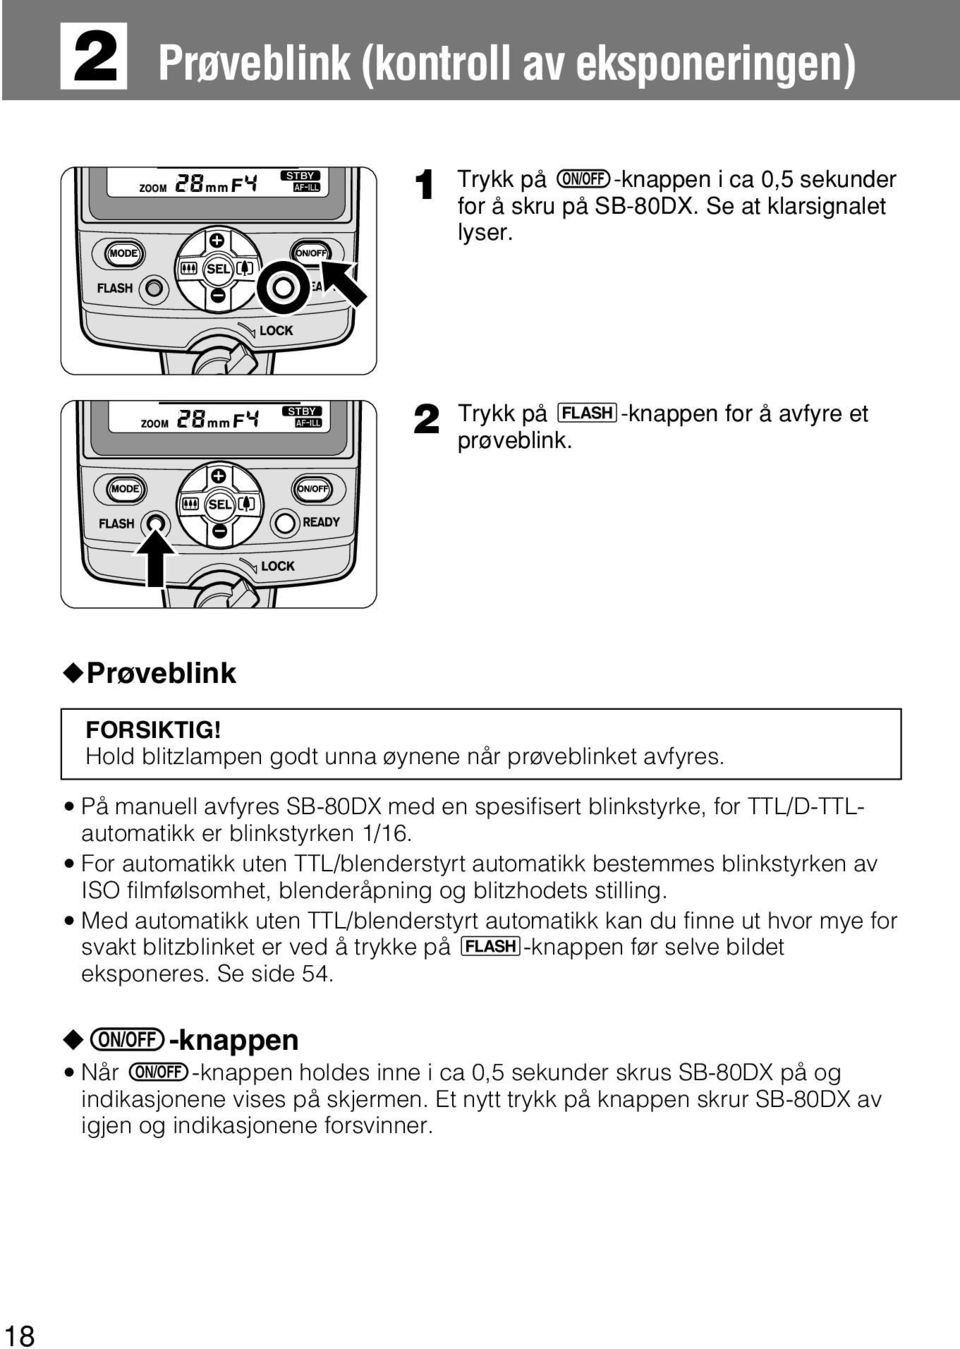 m For automatikk uten TTL/blenderstyrt automatikk bestemmes blinkstyrken av ISO filmfølsomhet, blenderåpning og blitzhodets stilling.